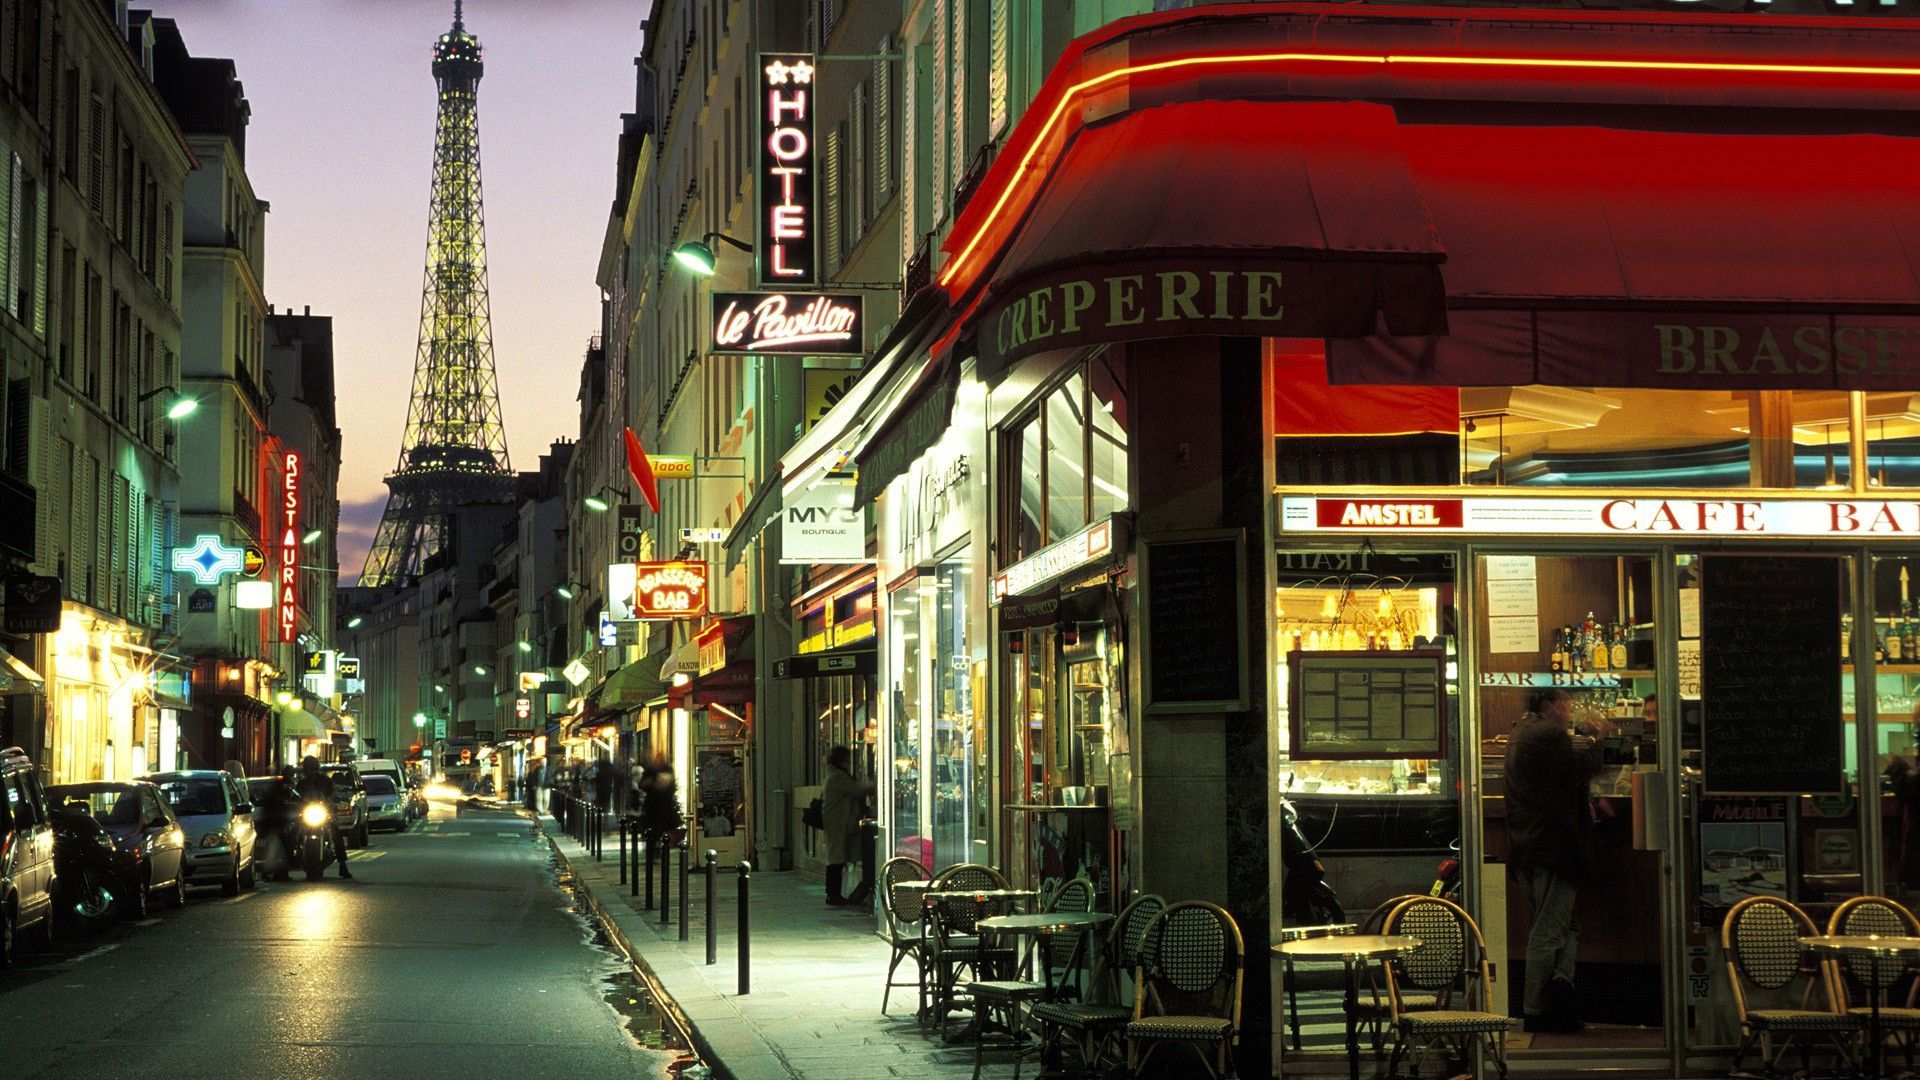 47+] Fondo de pantalla de Paris Cafe